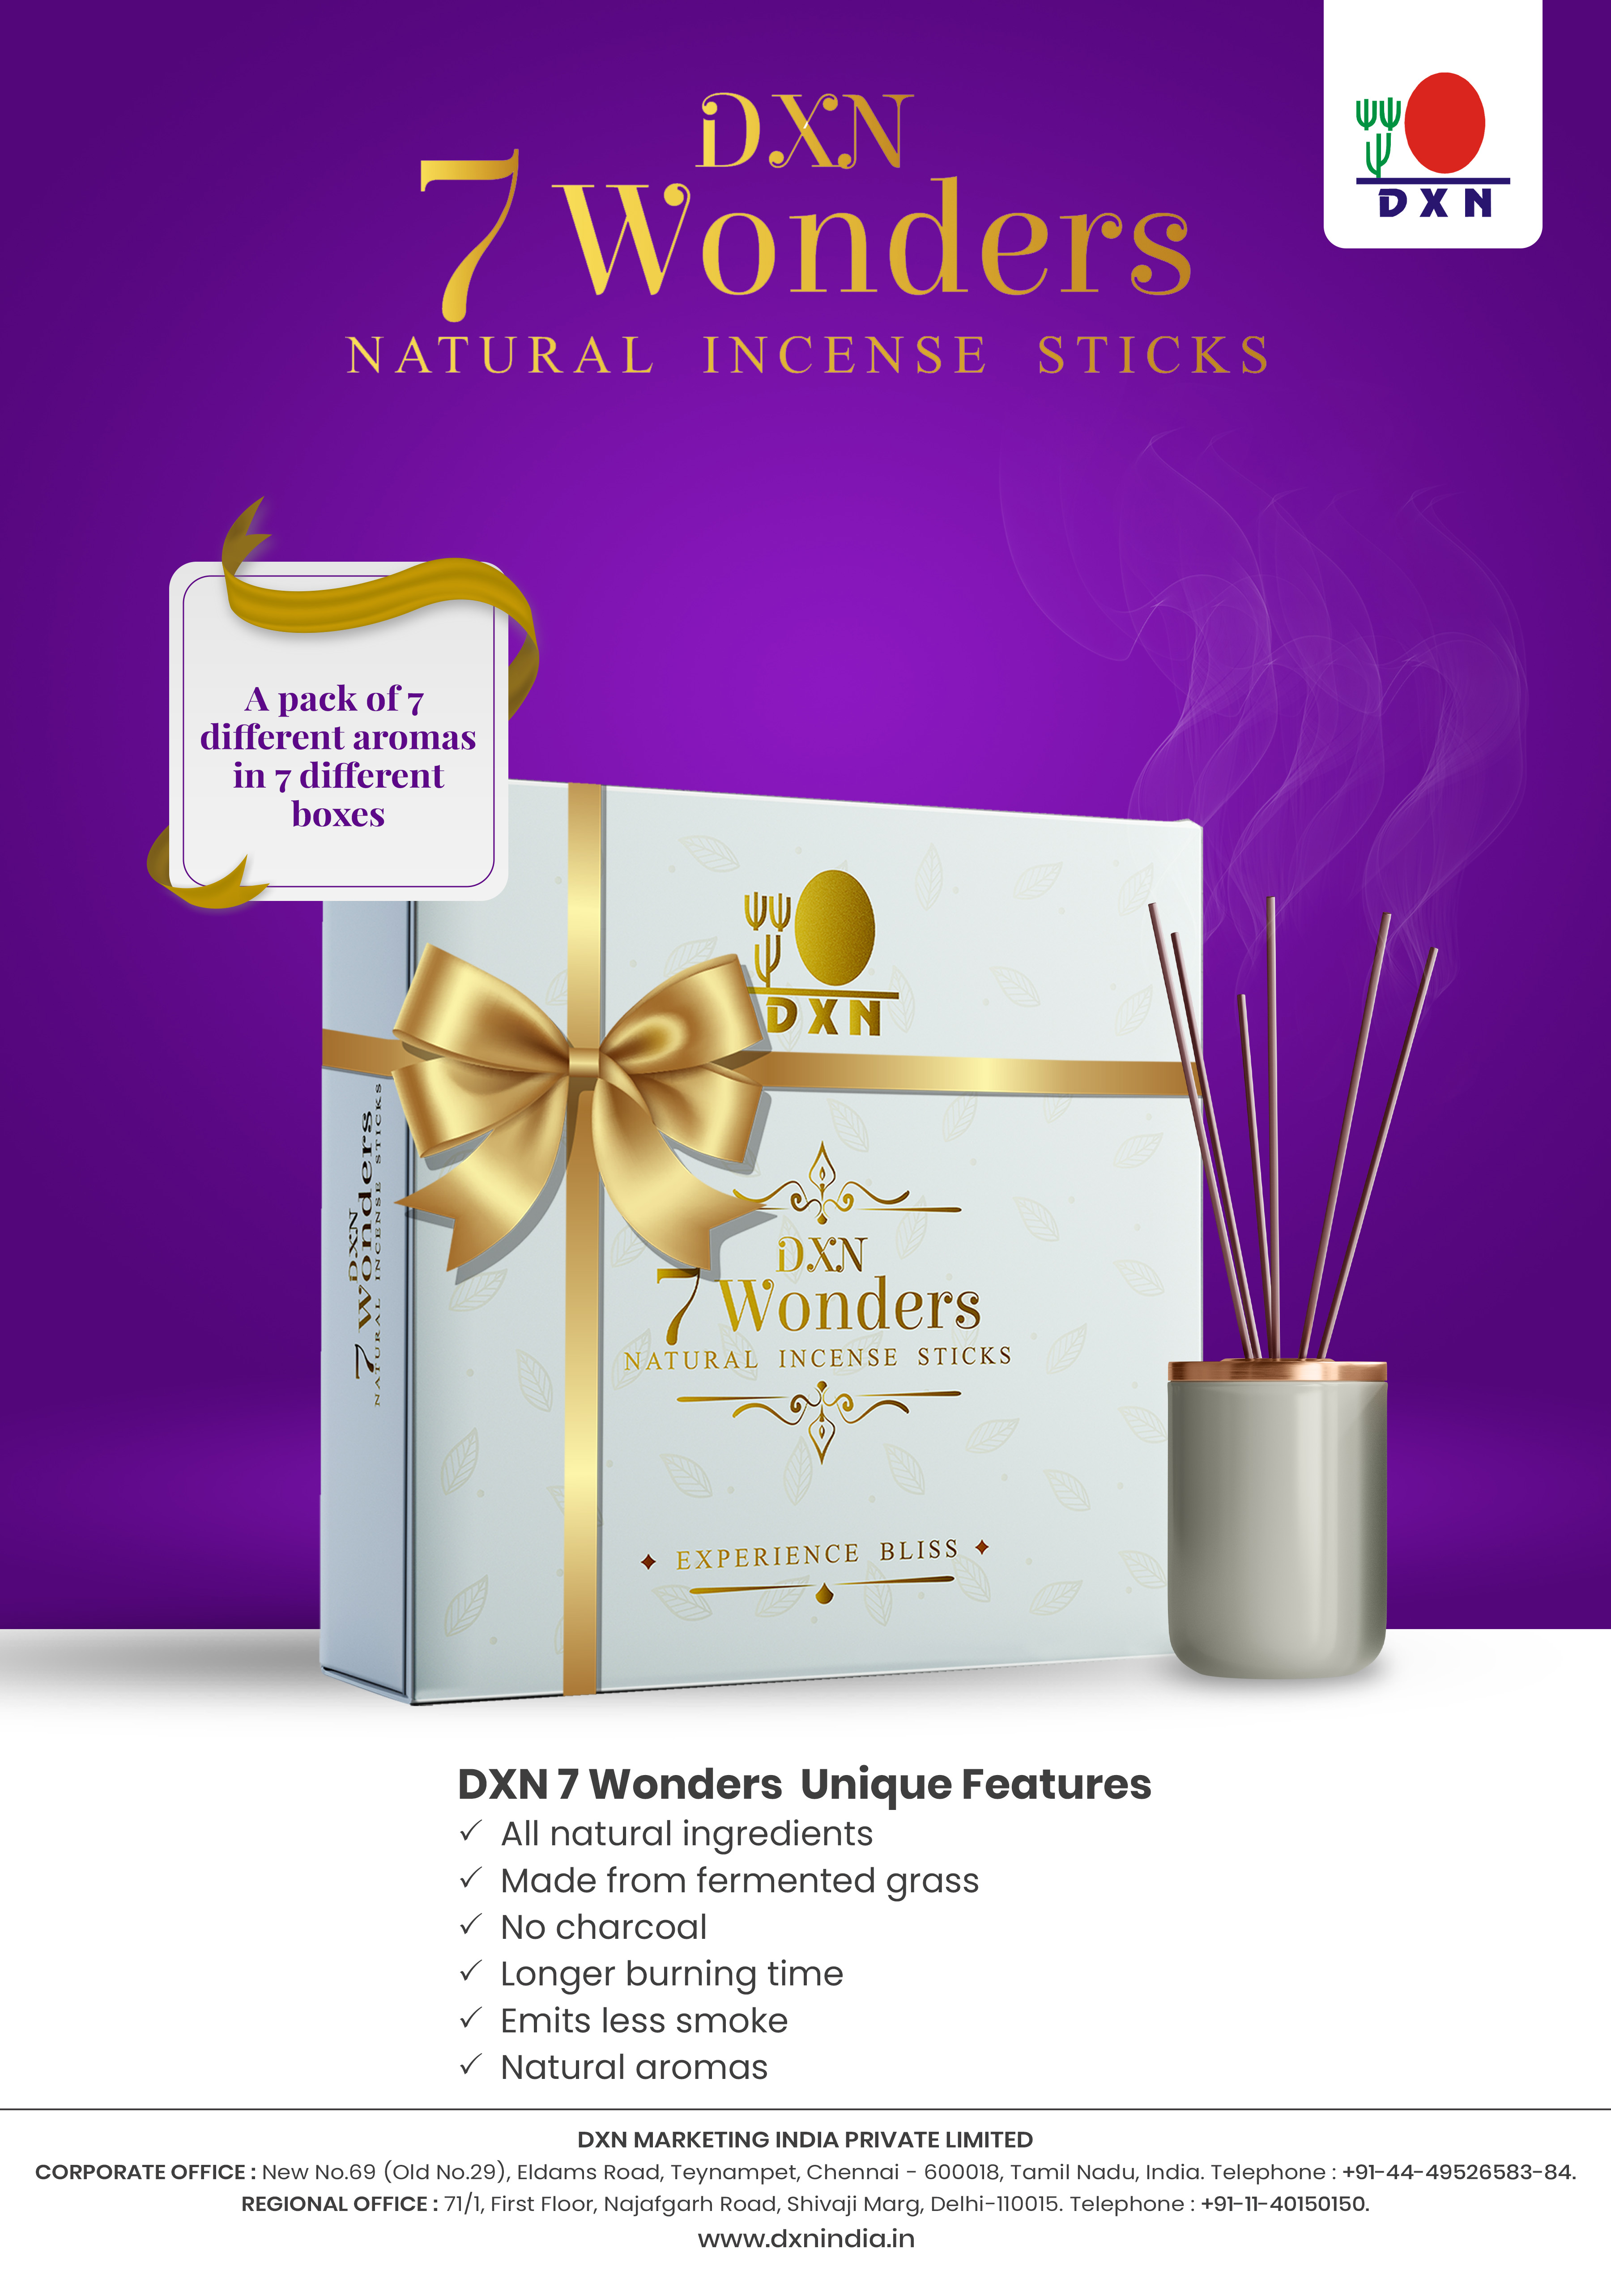 DXN 7 Wonders Natural Incense Sticks